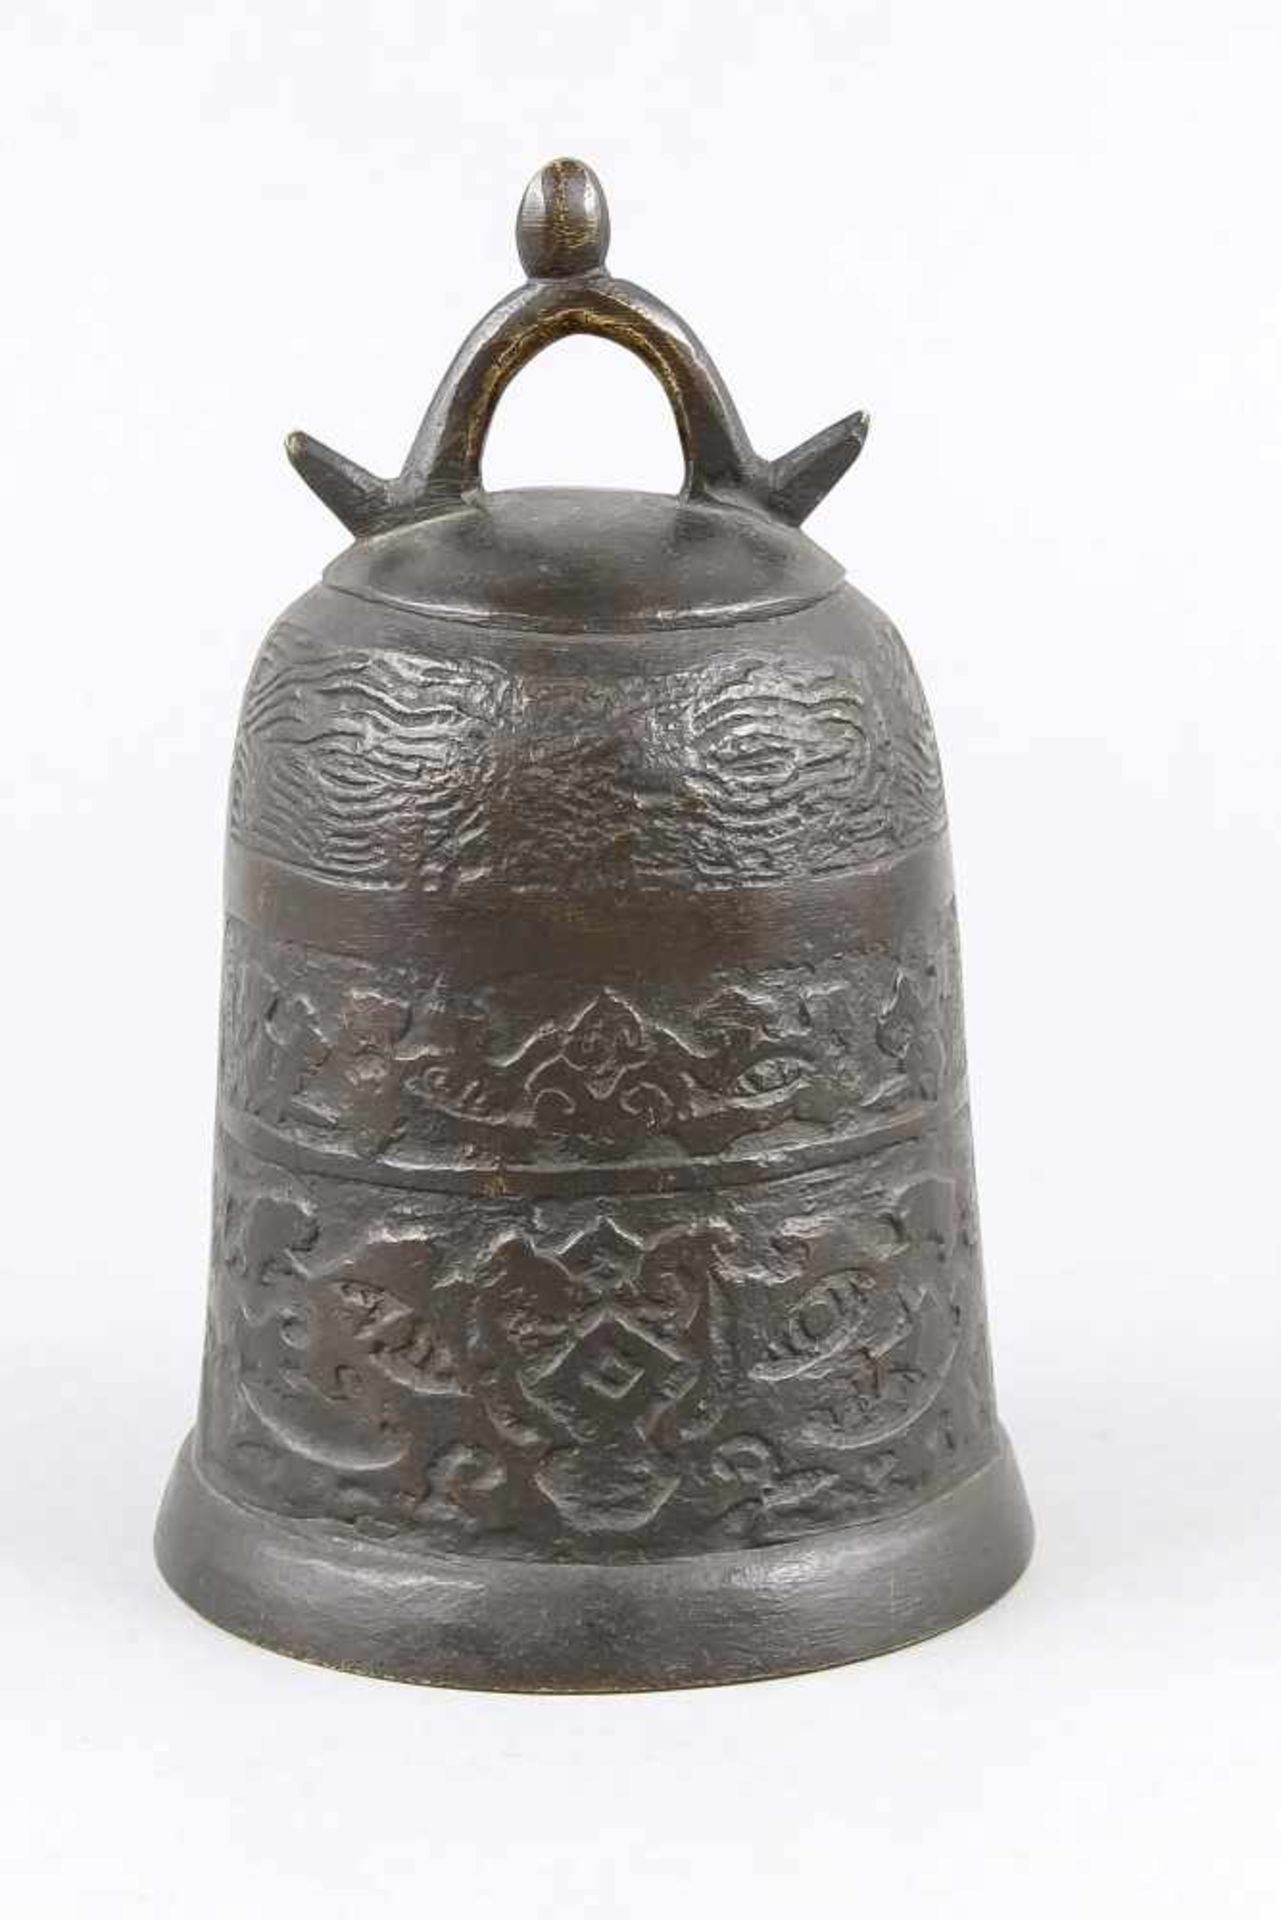 Bronze-Glocke, China, 19. Jh., Glockenkorpus unterteilt in 3 Ornamentfriese imarchaisierenden - Bild 2 aus 2